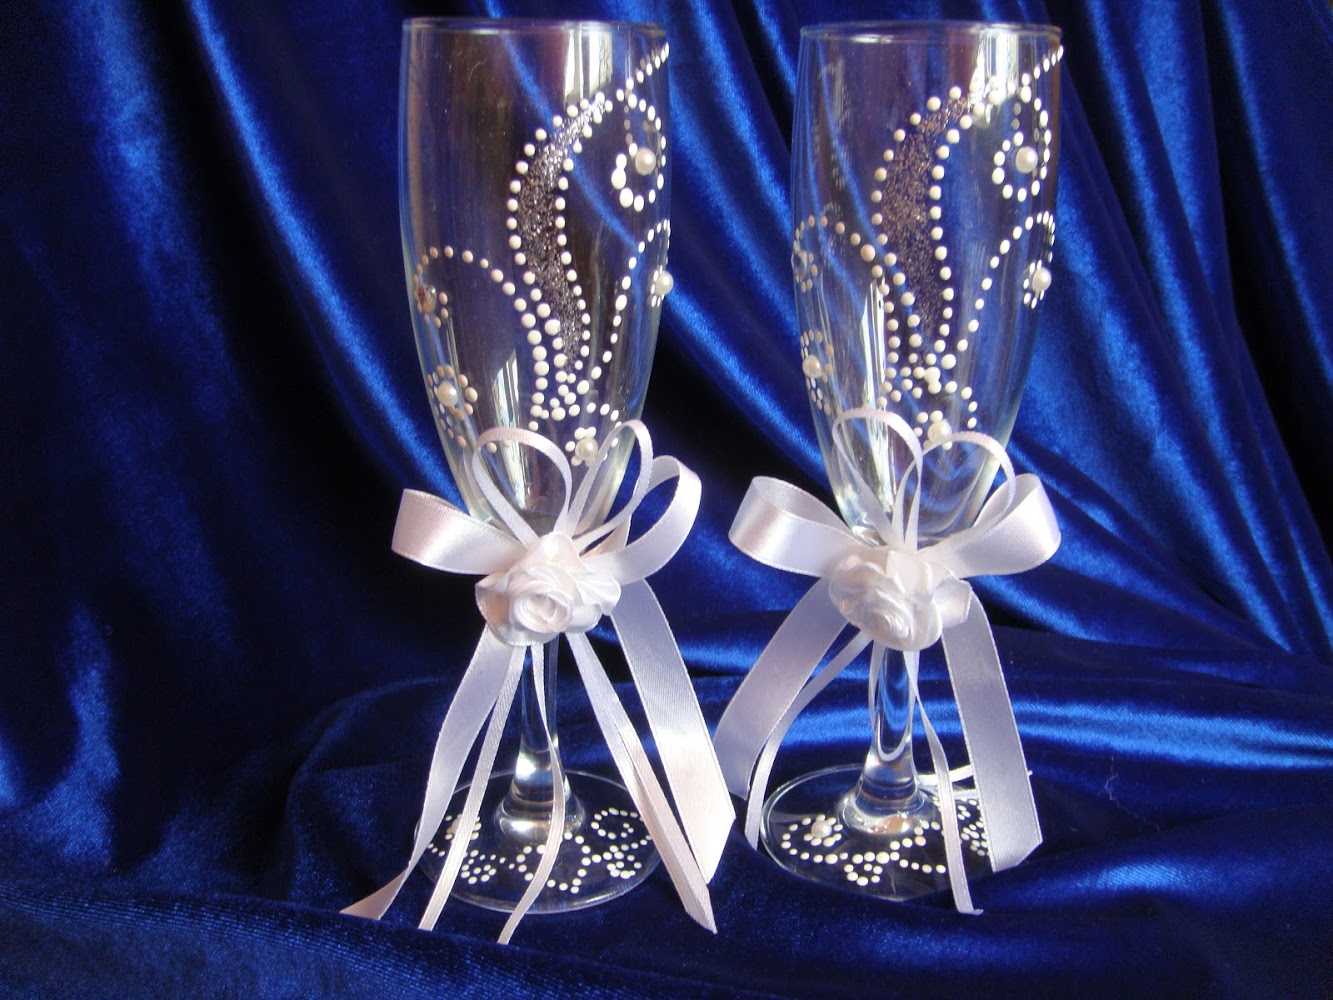 Как красиво и оригинально украсить свадебные бокалы своими руками Какие материалы использовать для оформления свадебных фужеров Простые и доступные идеи для декора бокалов